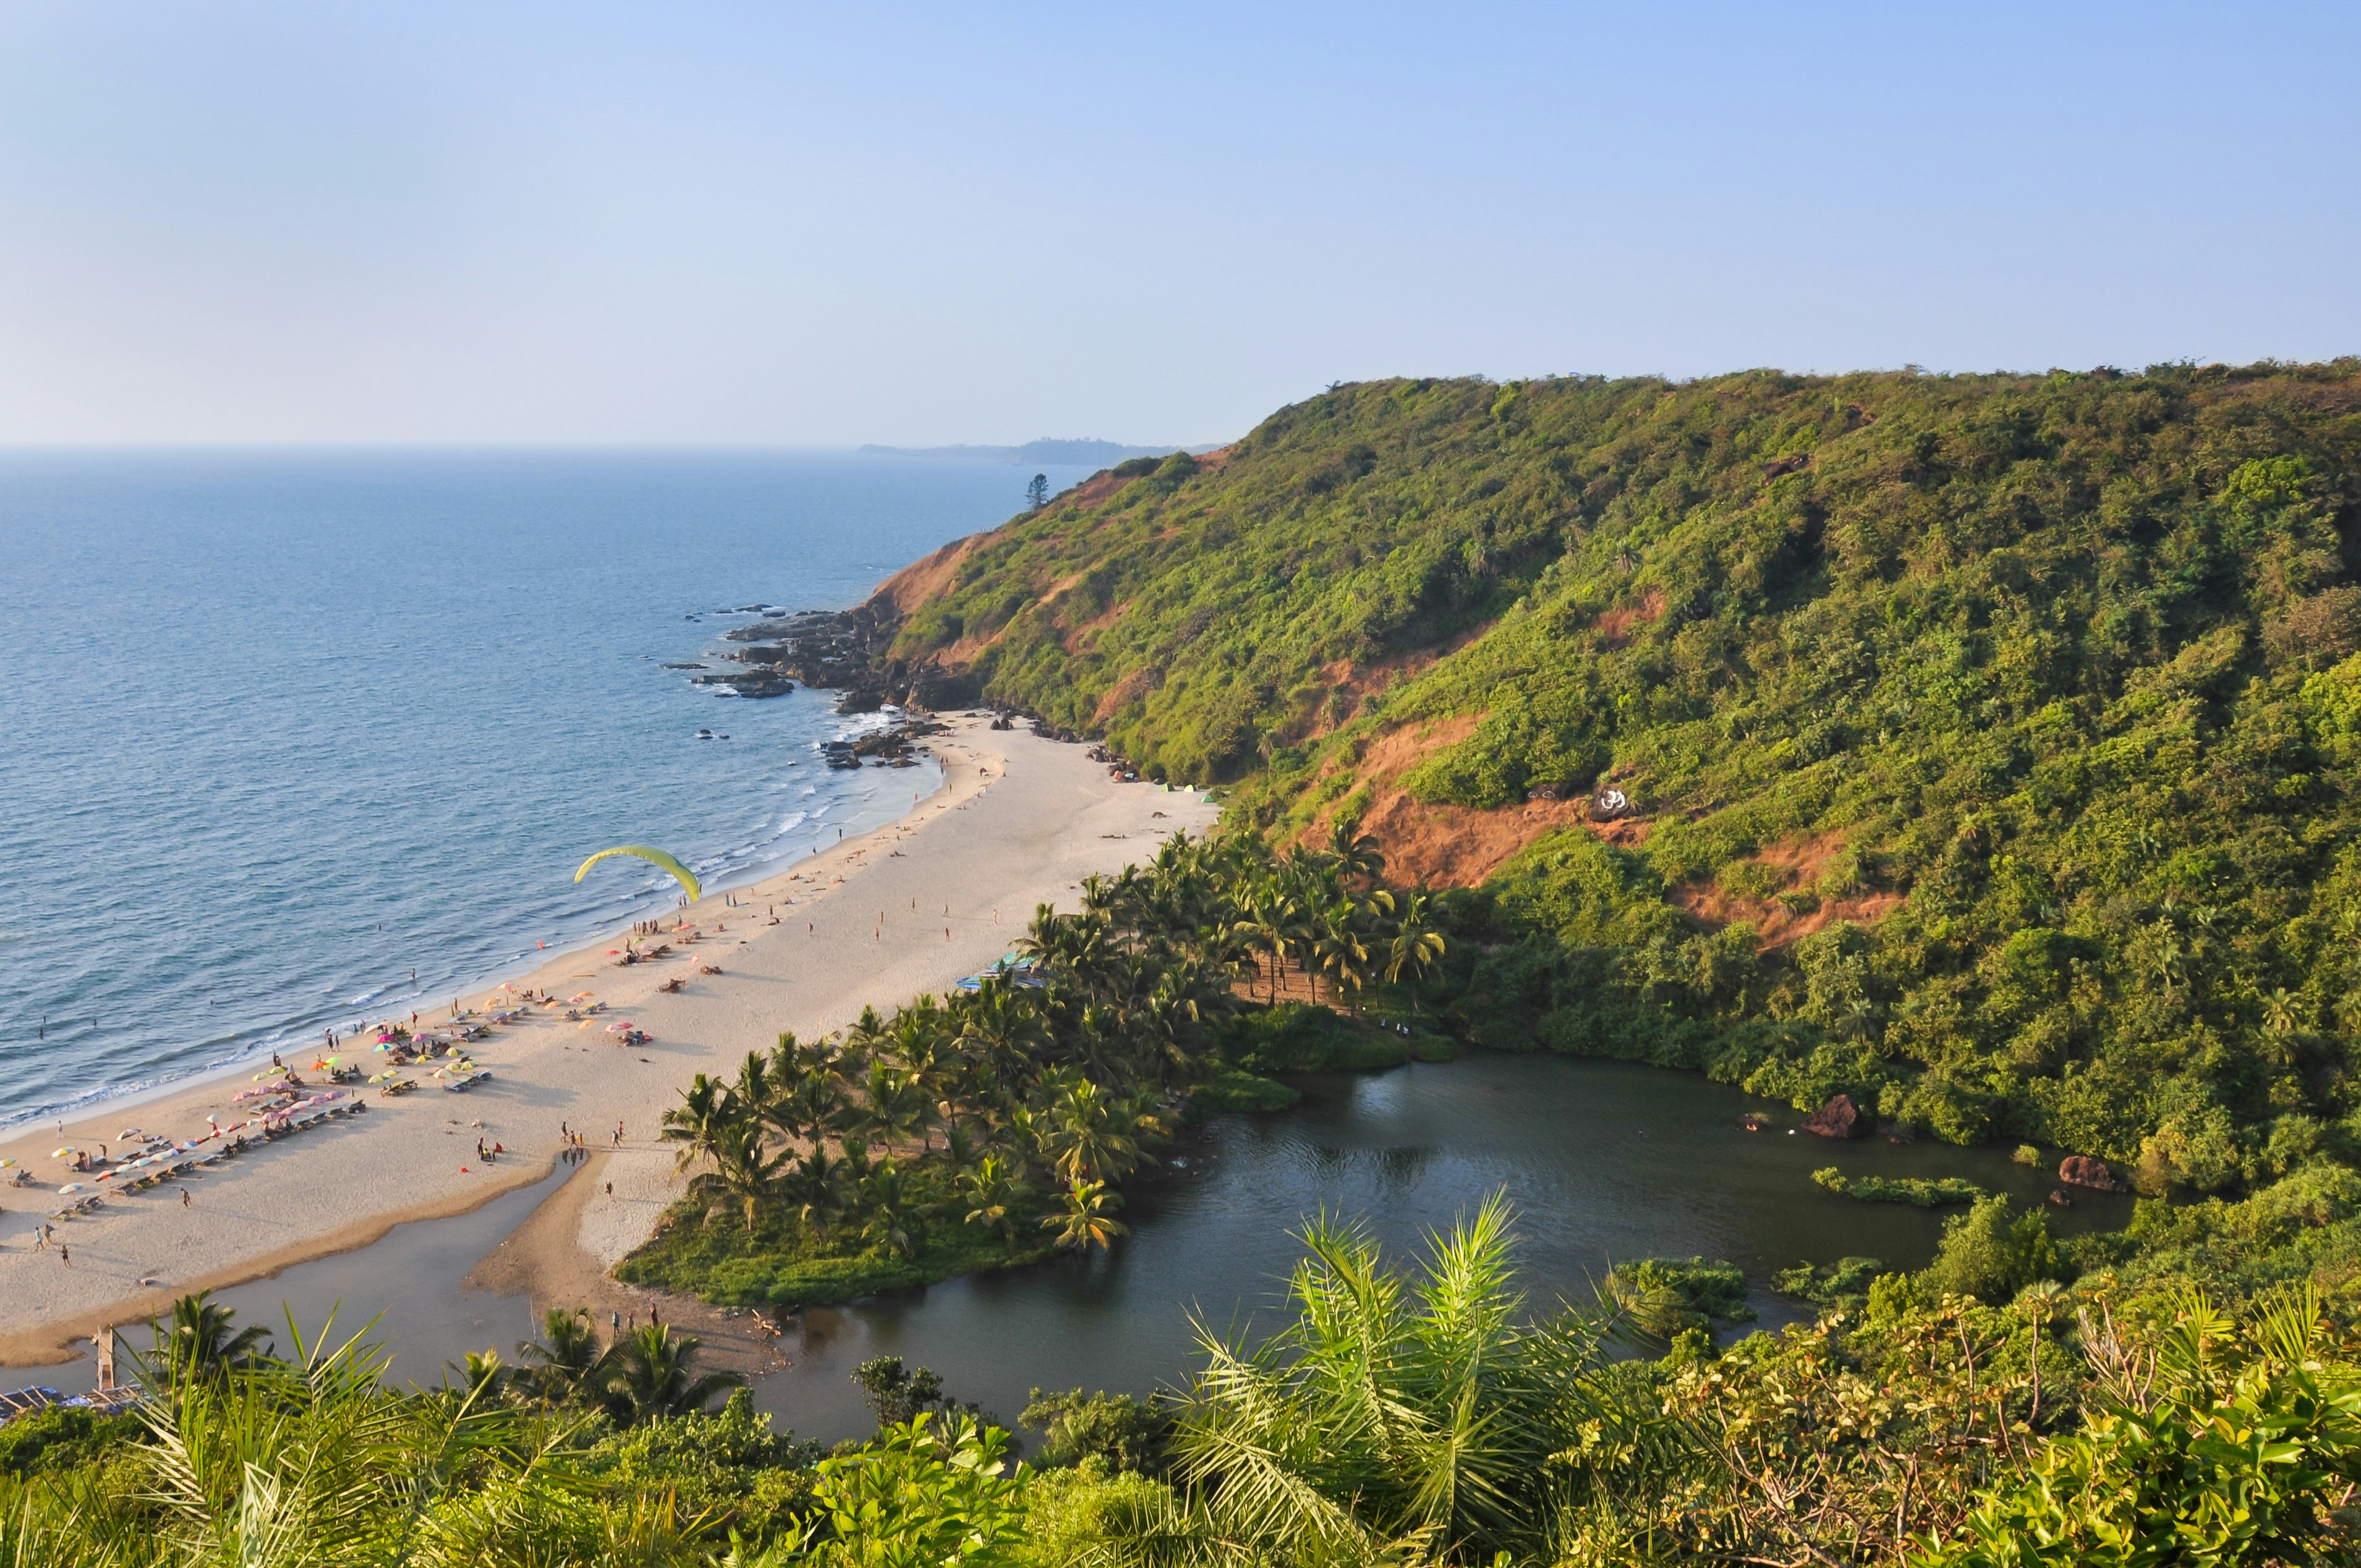 Find Your Peace at Arambol Beach in Goa